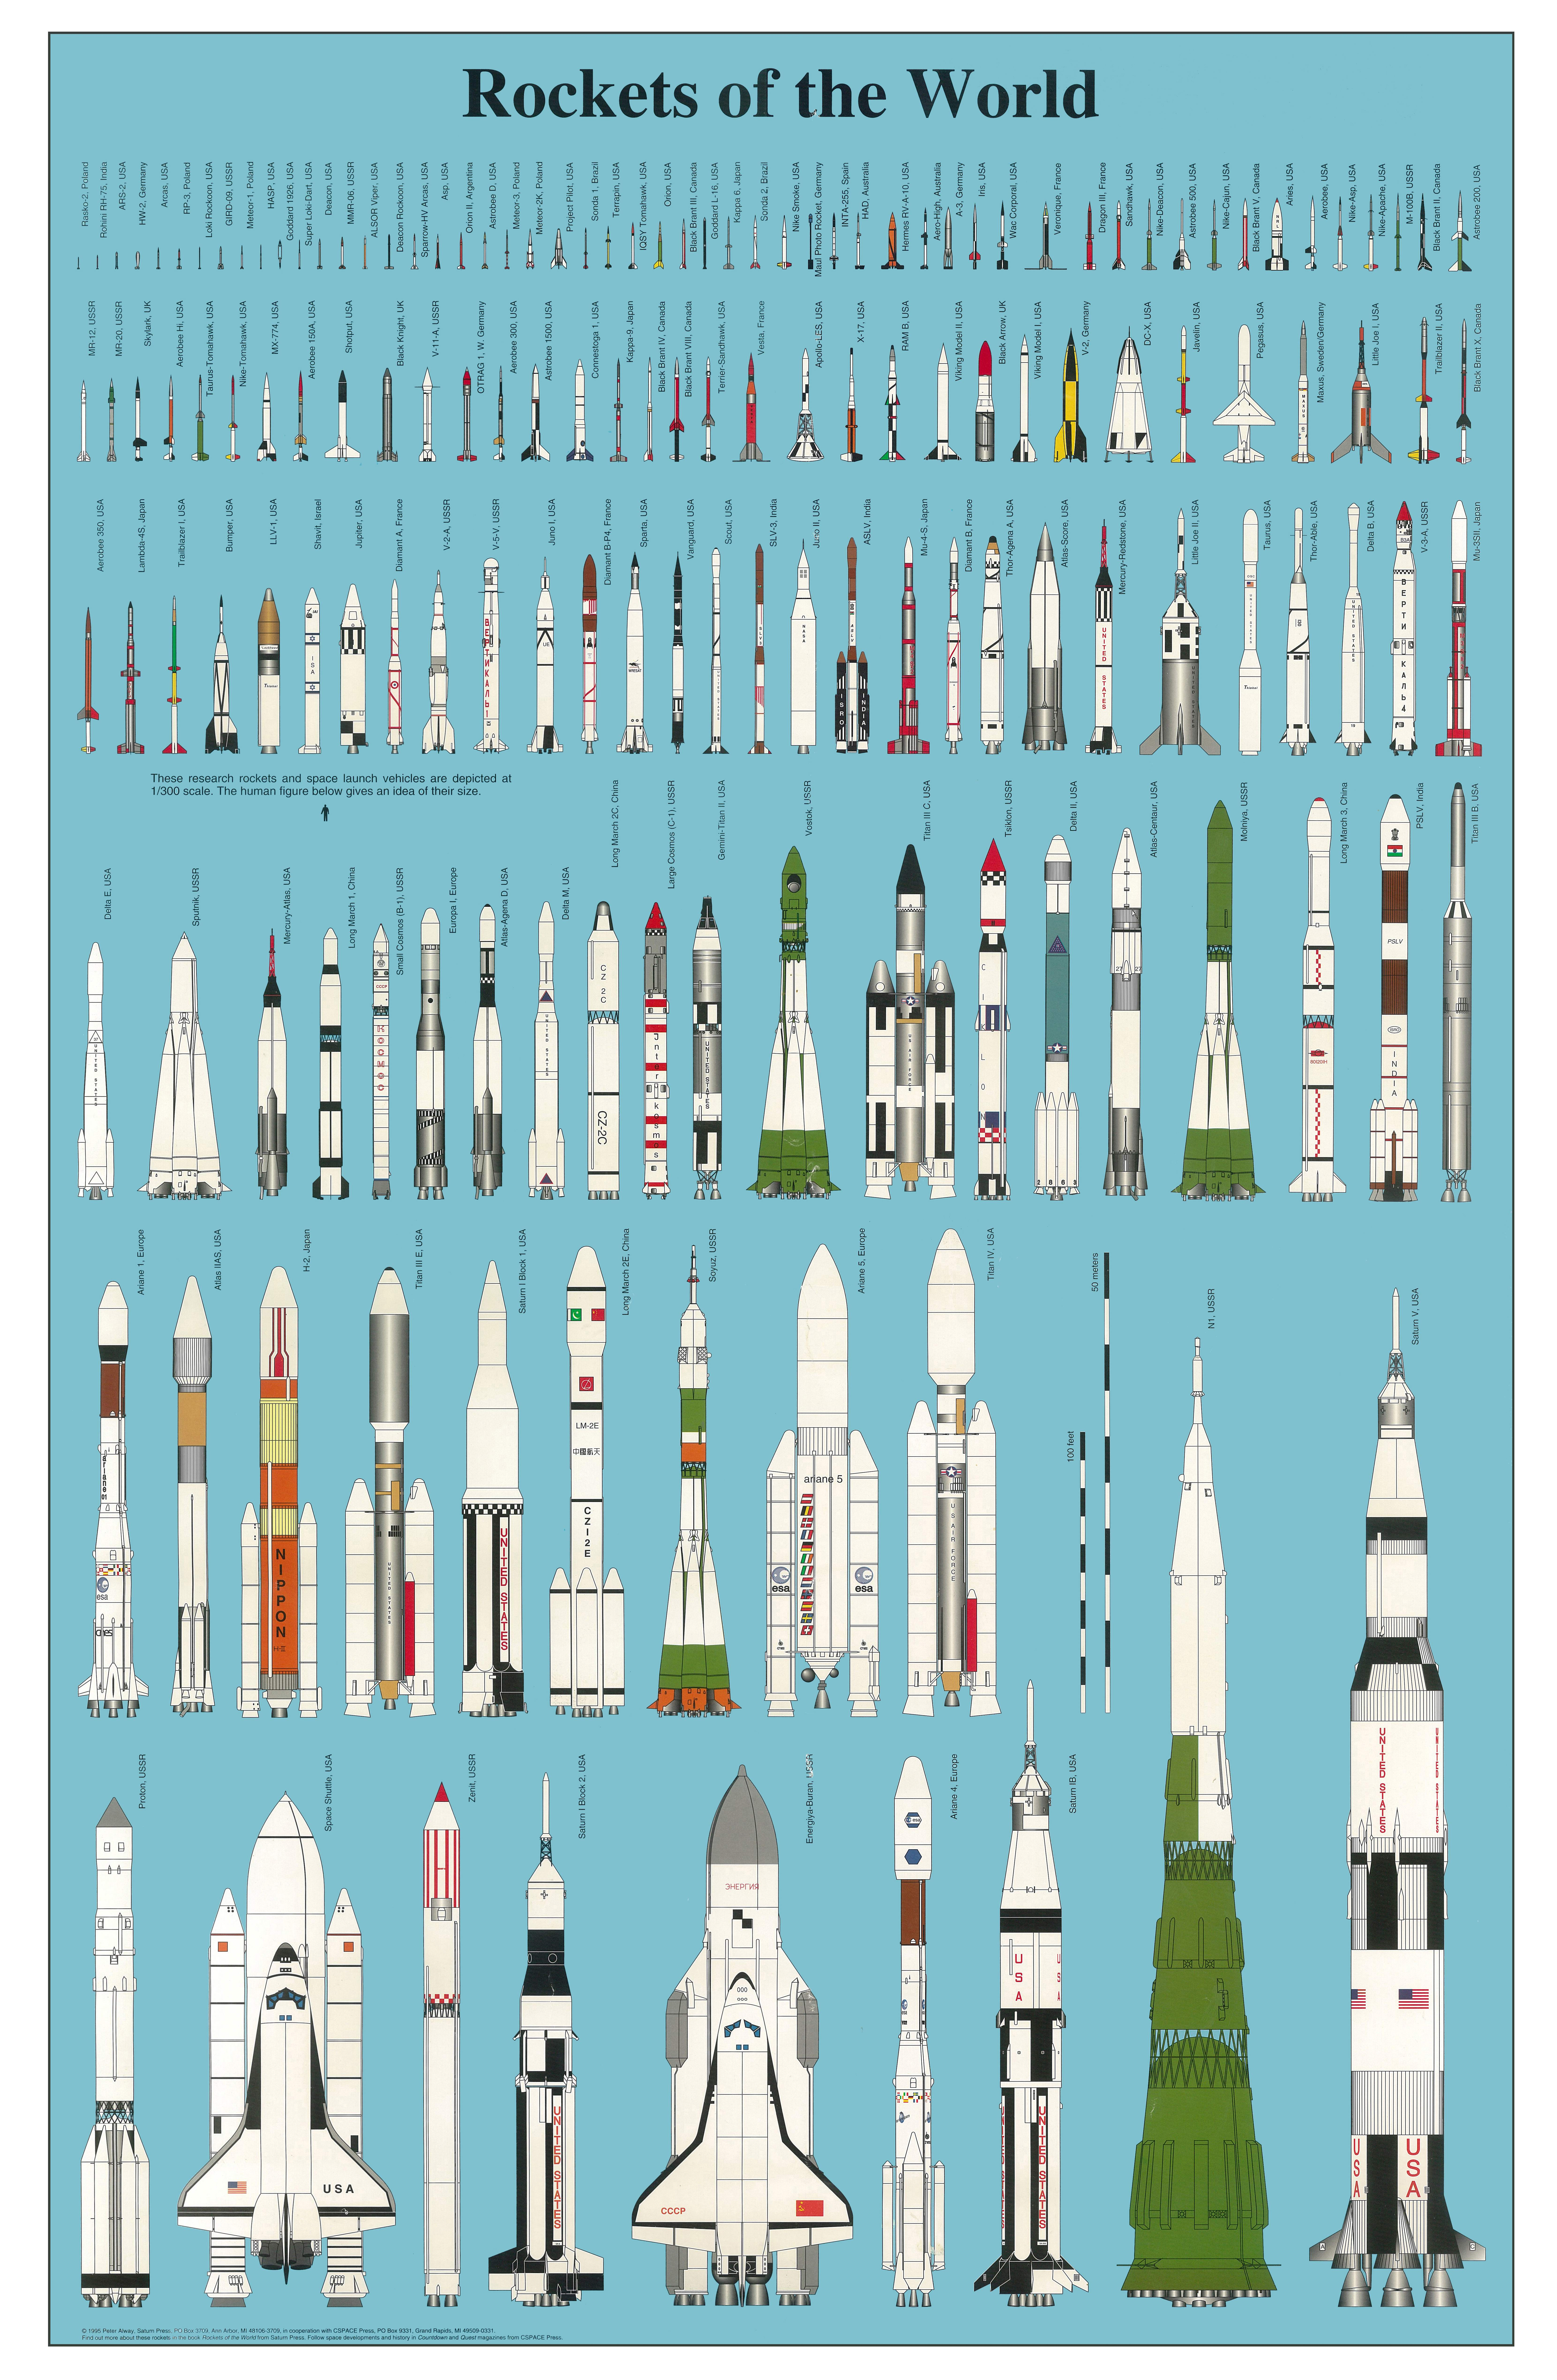 Une affiche de presque toutes les fusées du monde